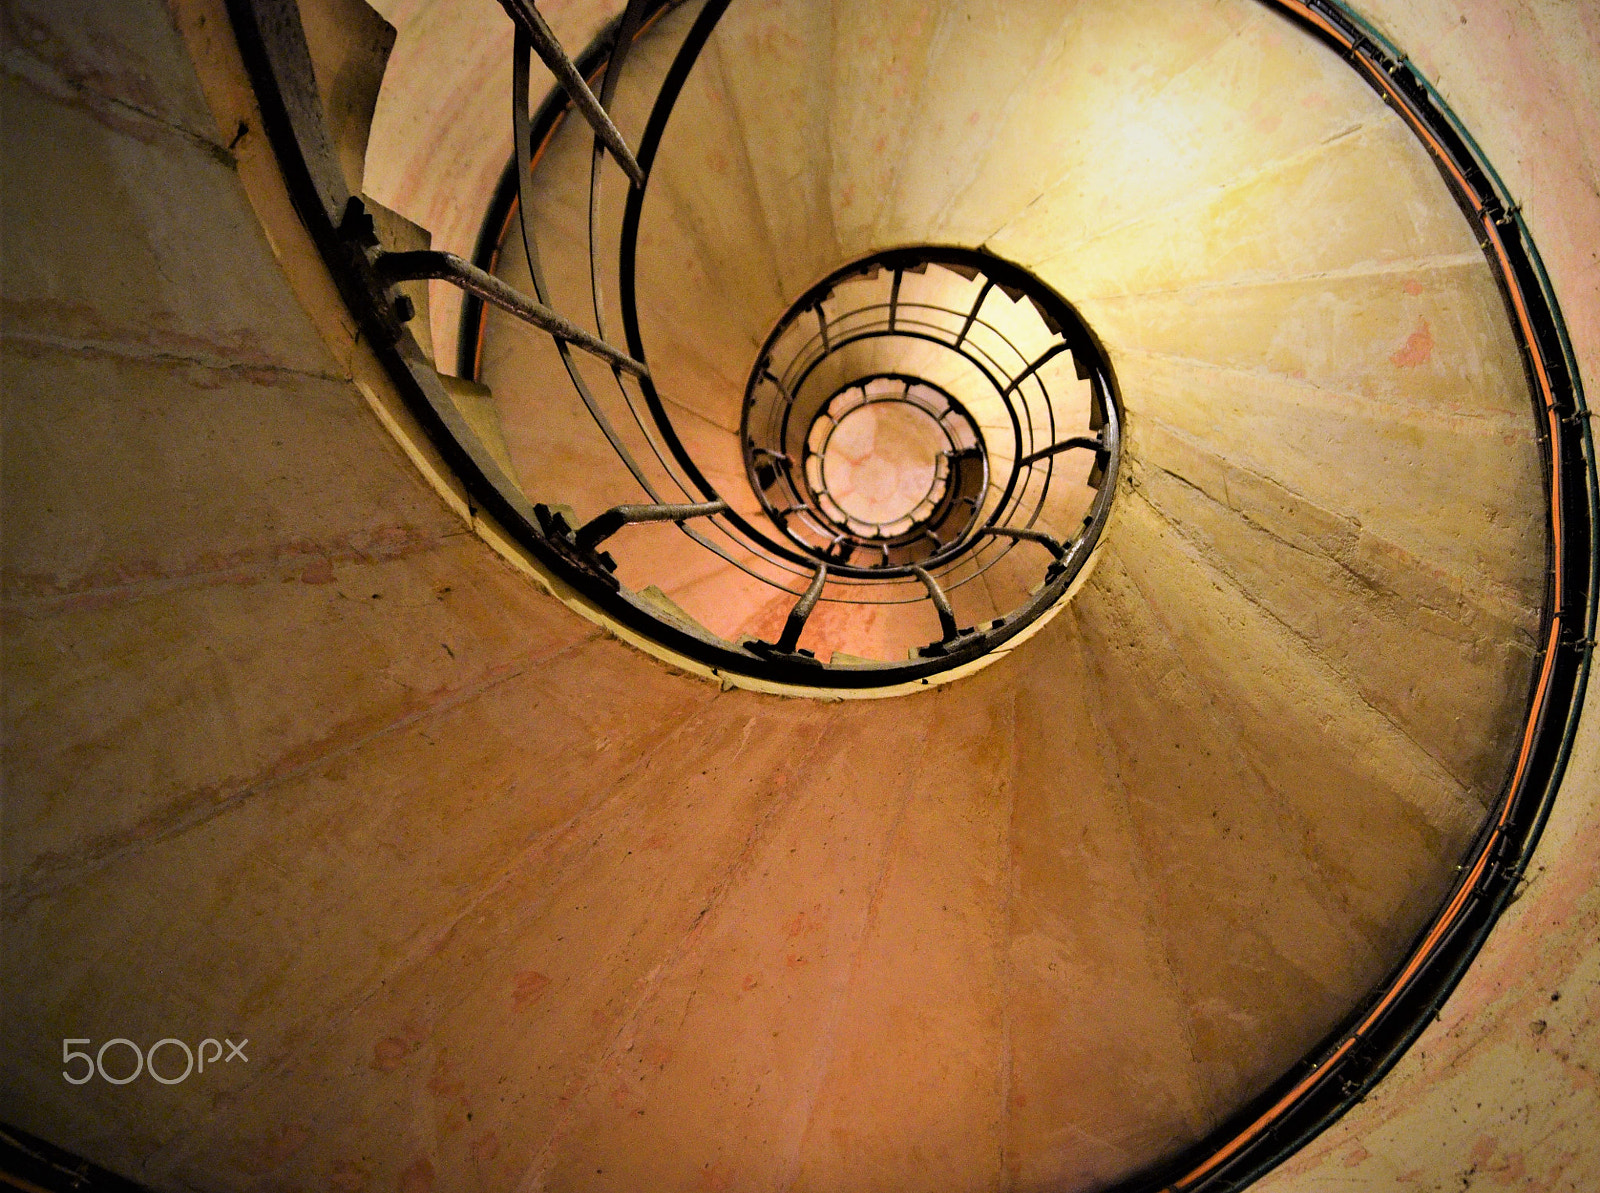 Nikon D5100 sample photo. Stairs inside paris arch de triomphe photography